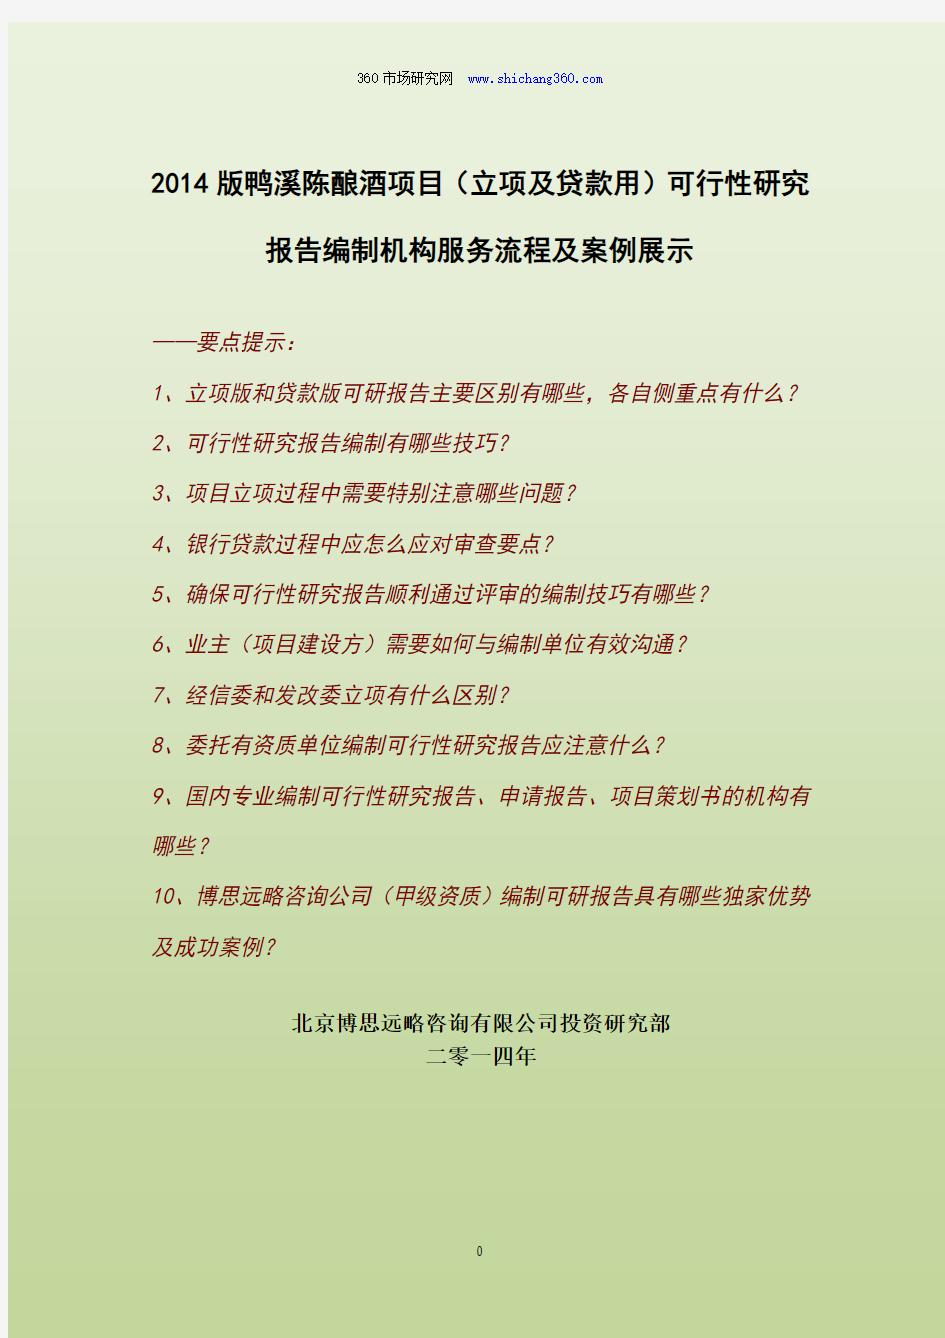 2014版鸭溪陈酿酒项目(立项及贷款用)可行性研究报告编制机构服务流程及案例展示